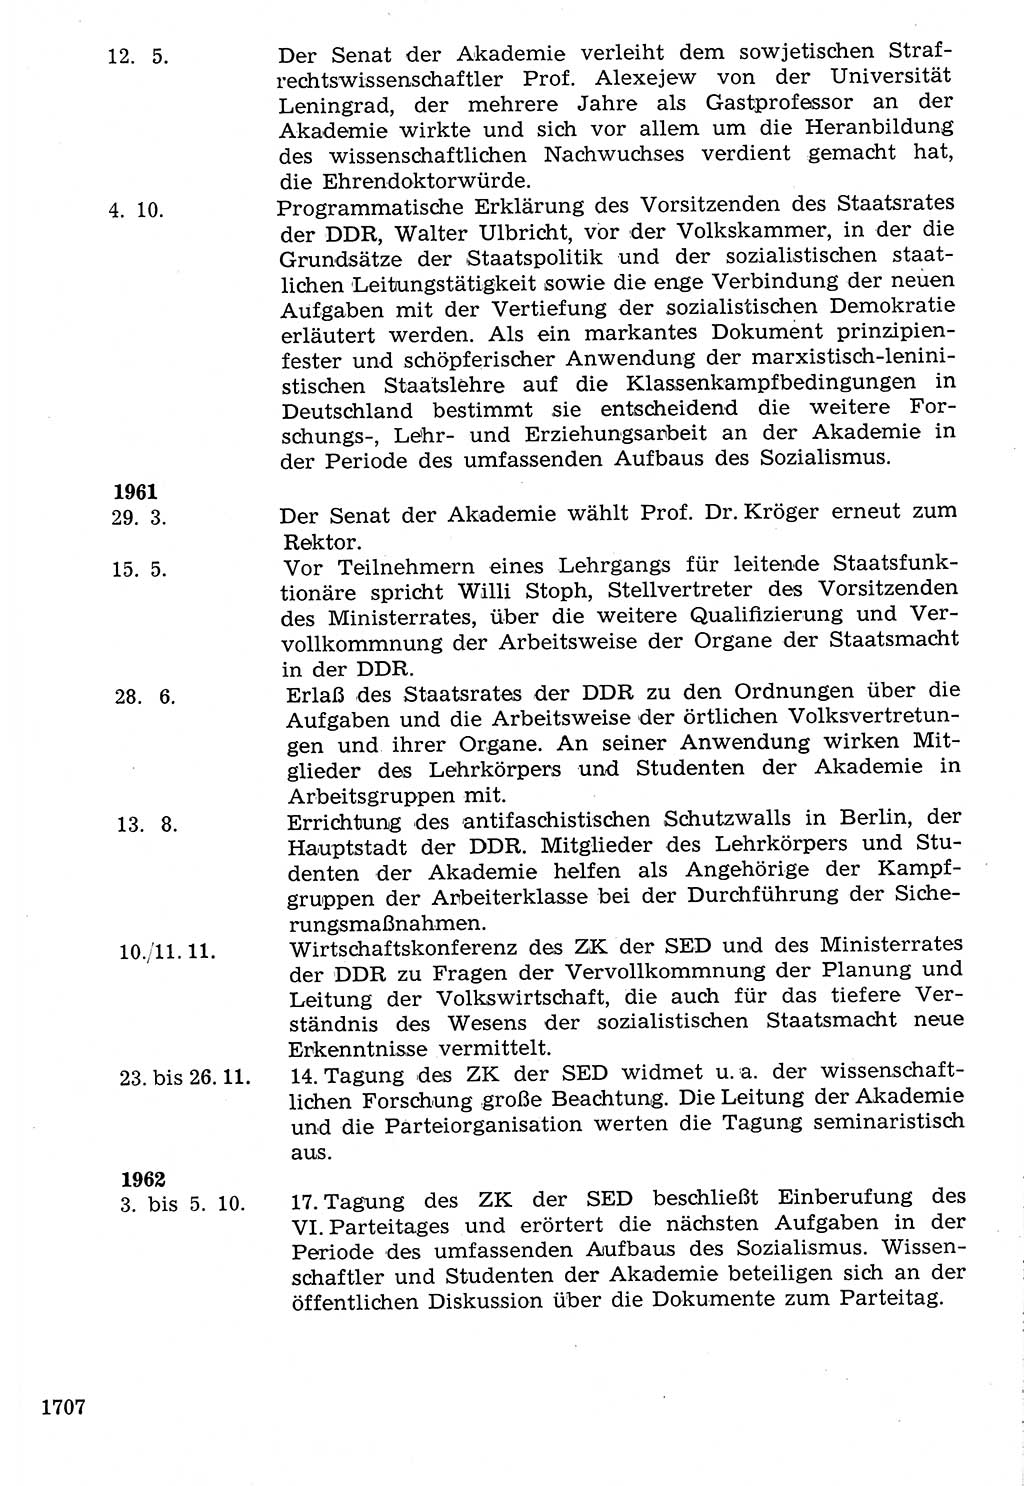 Staat und Recht (StuR), 17. Jahrgang [Deutsche Demokratische Republik (DDR)] 1968, Seite 1707 (StuR DDR 1968, S. 1707)